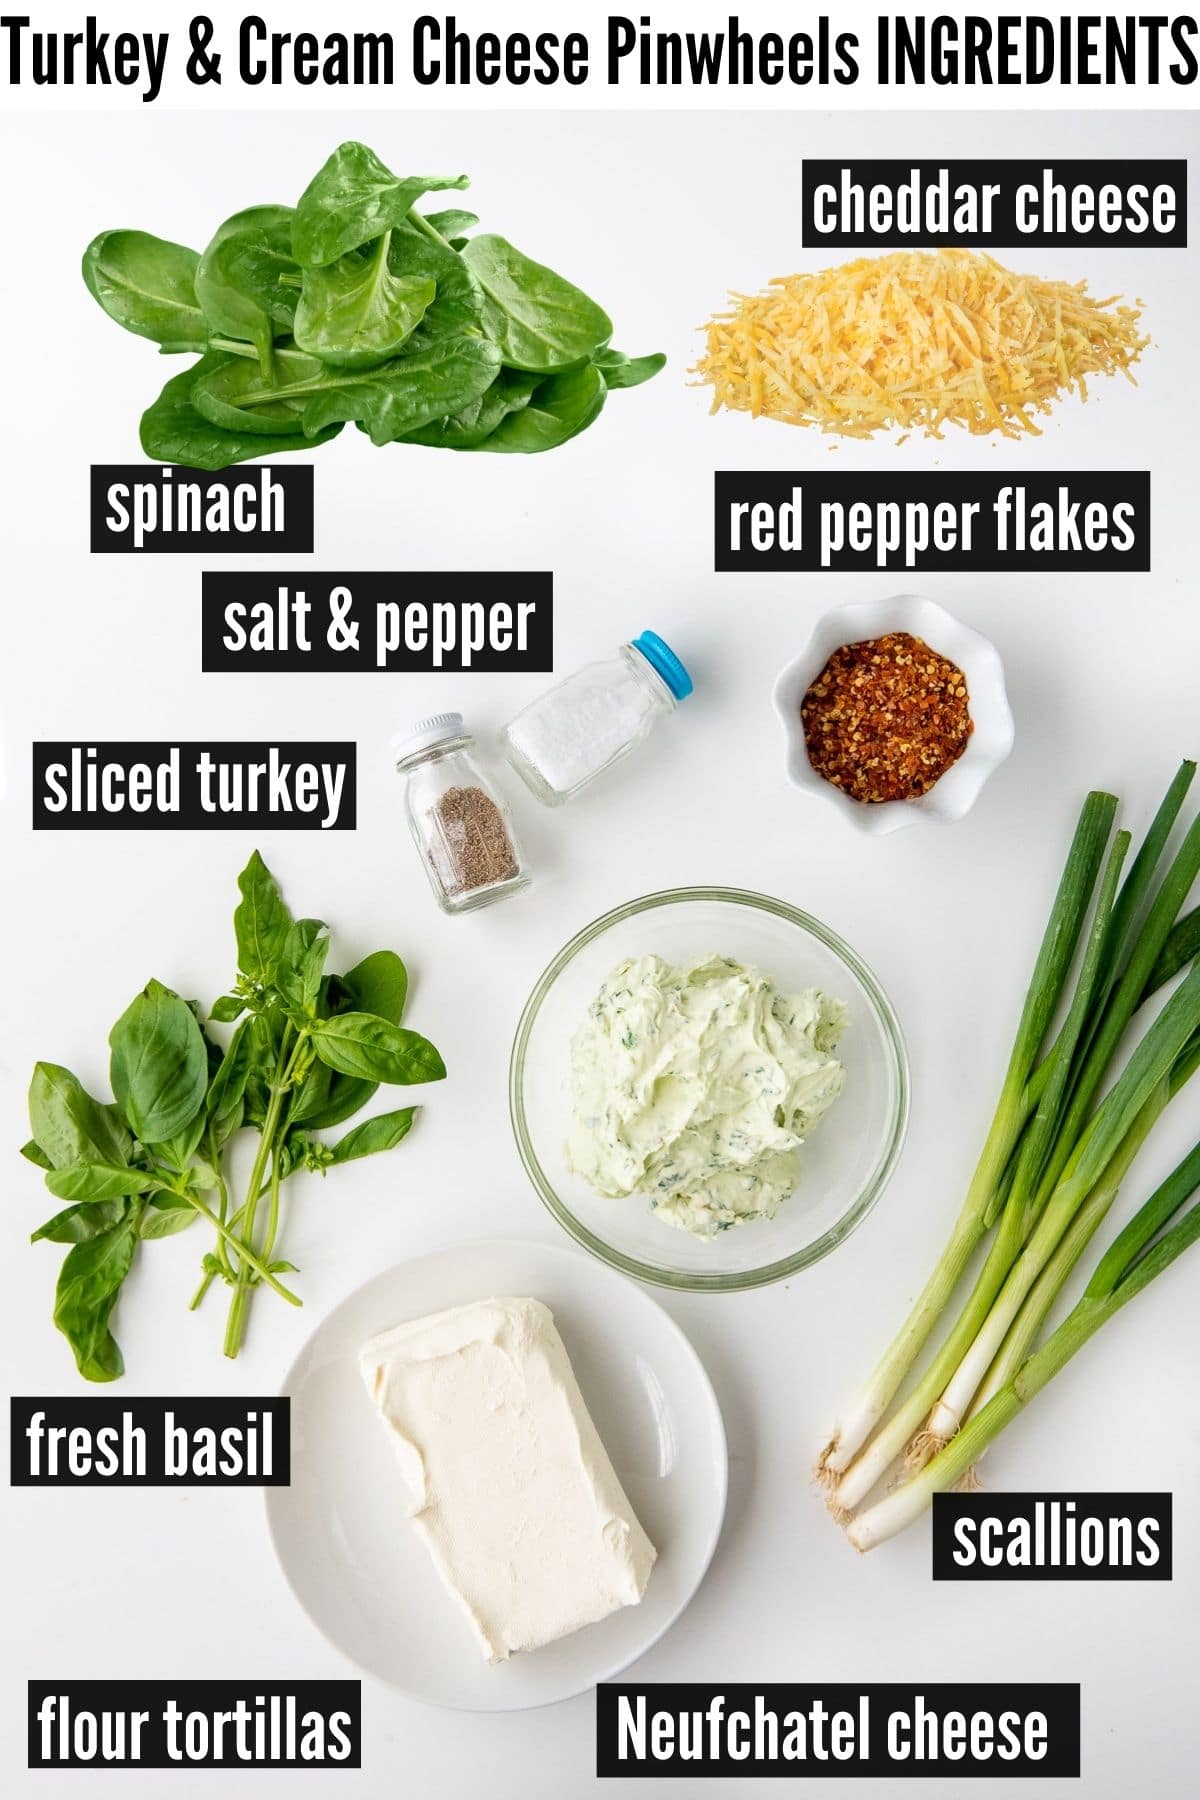 pinwheets ingredients